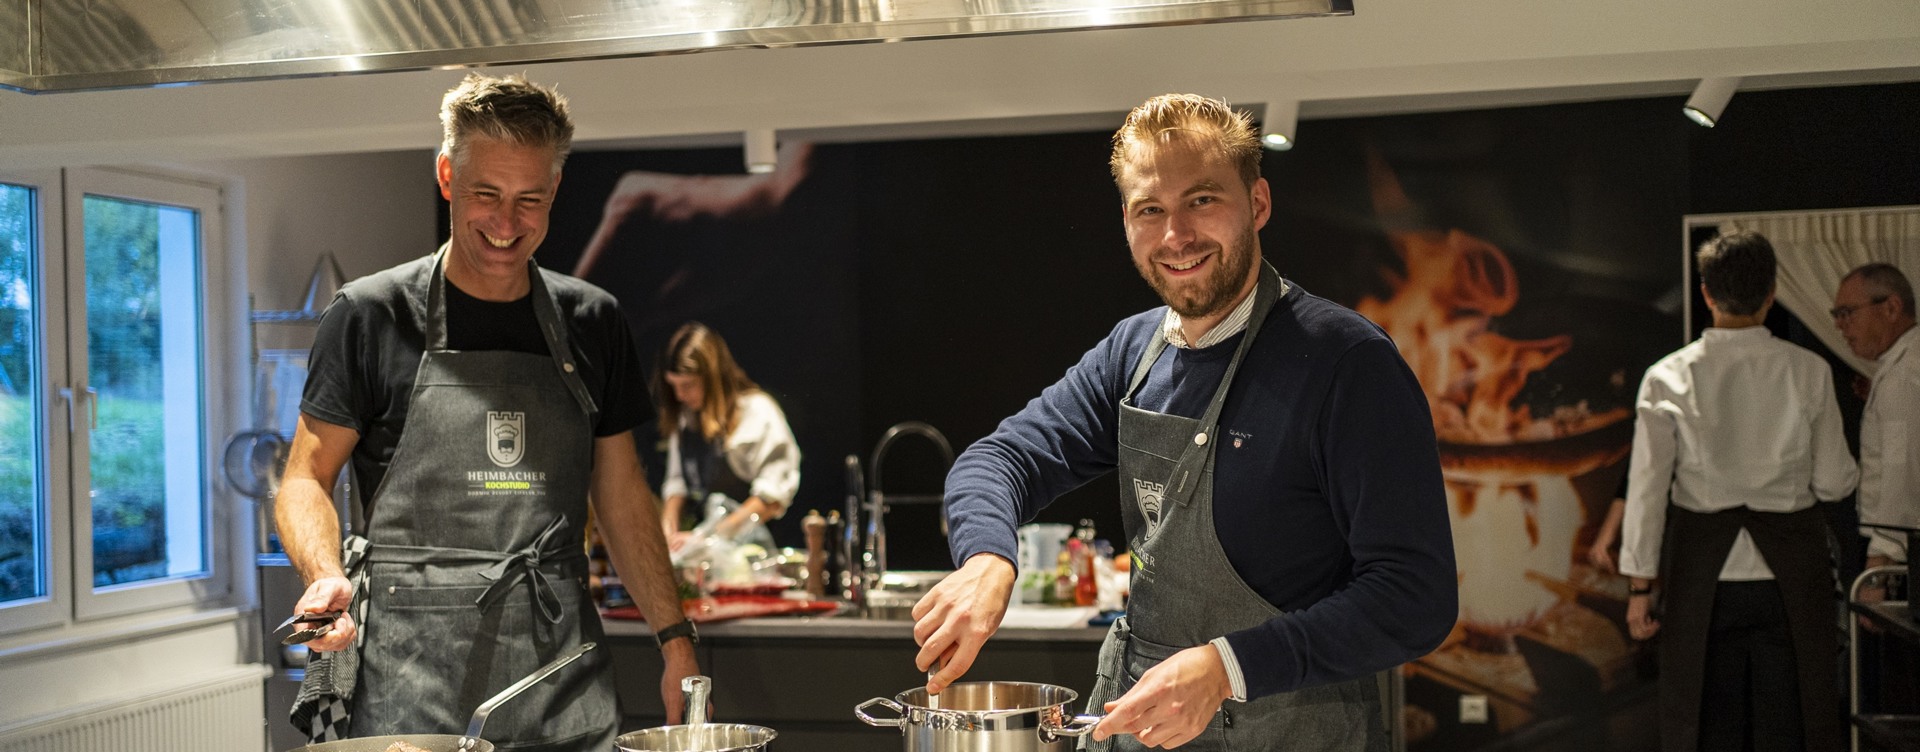 Erleben Sie einen großartigen Kochworkshop
als Teambuilding-Aktivität in der Eifel